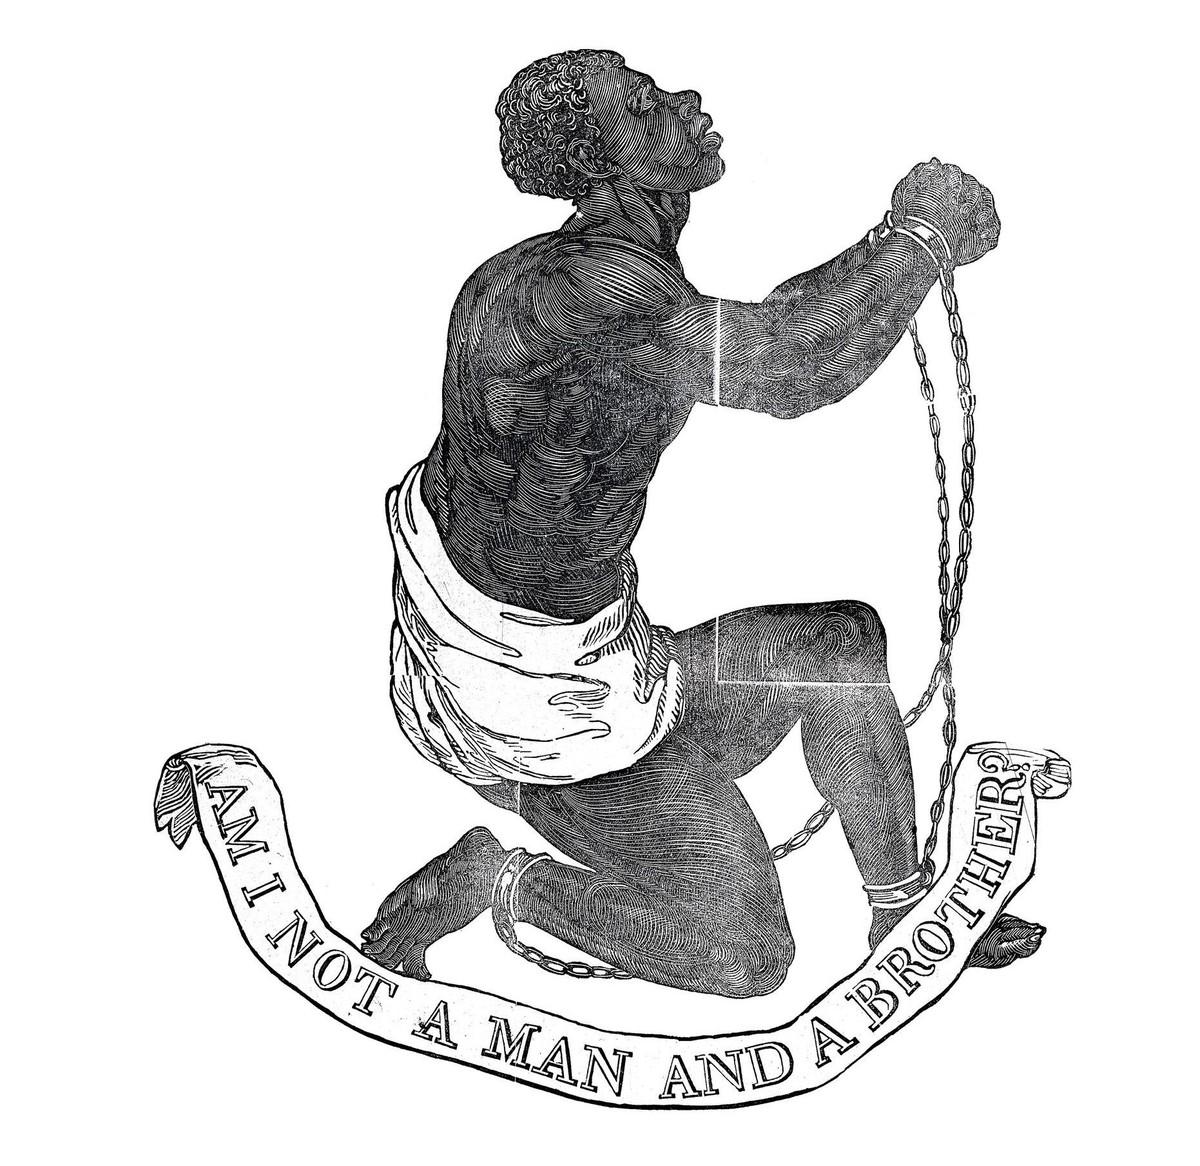 Emblème de la Société pour l'abolition de la traite négrière, Angleterre, 1787.